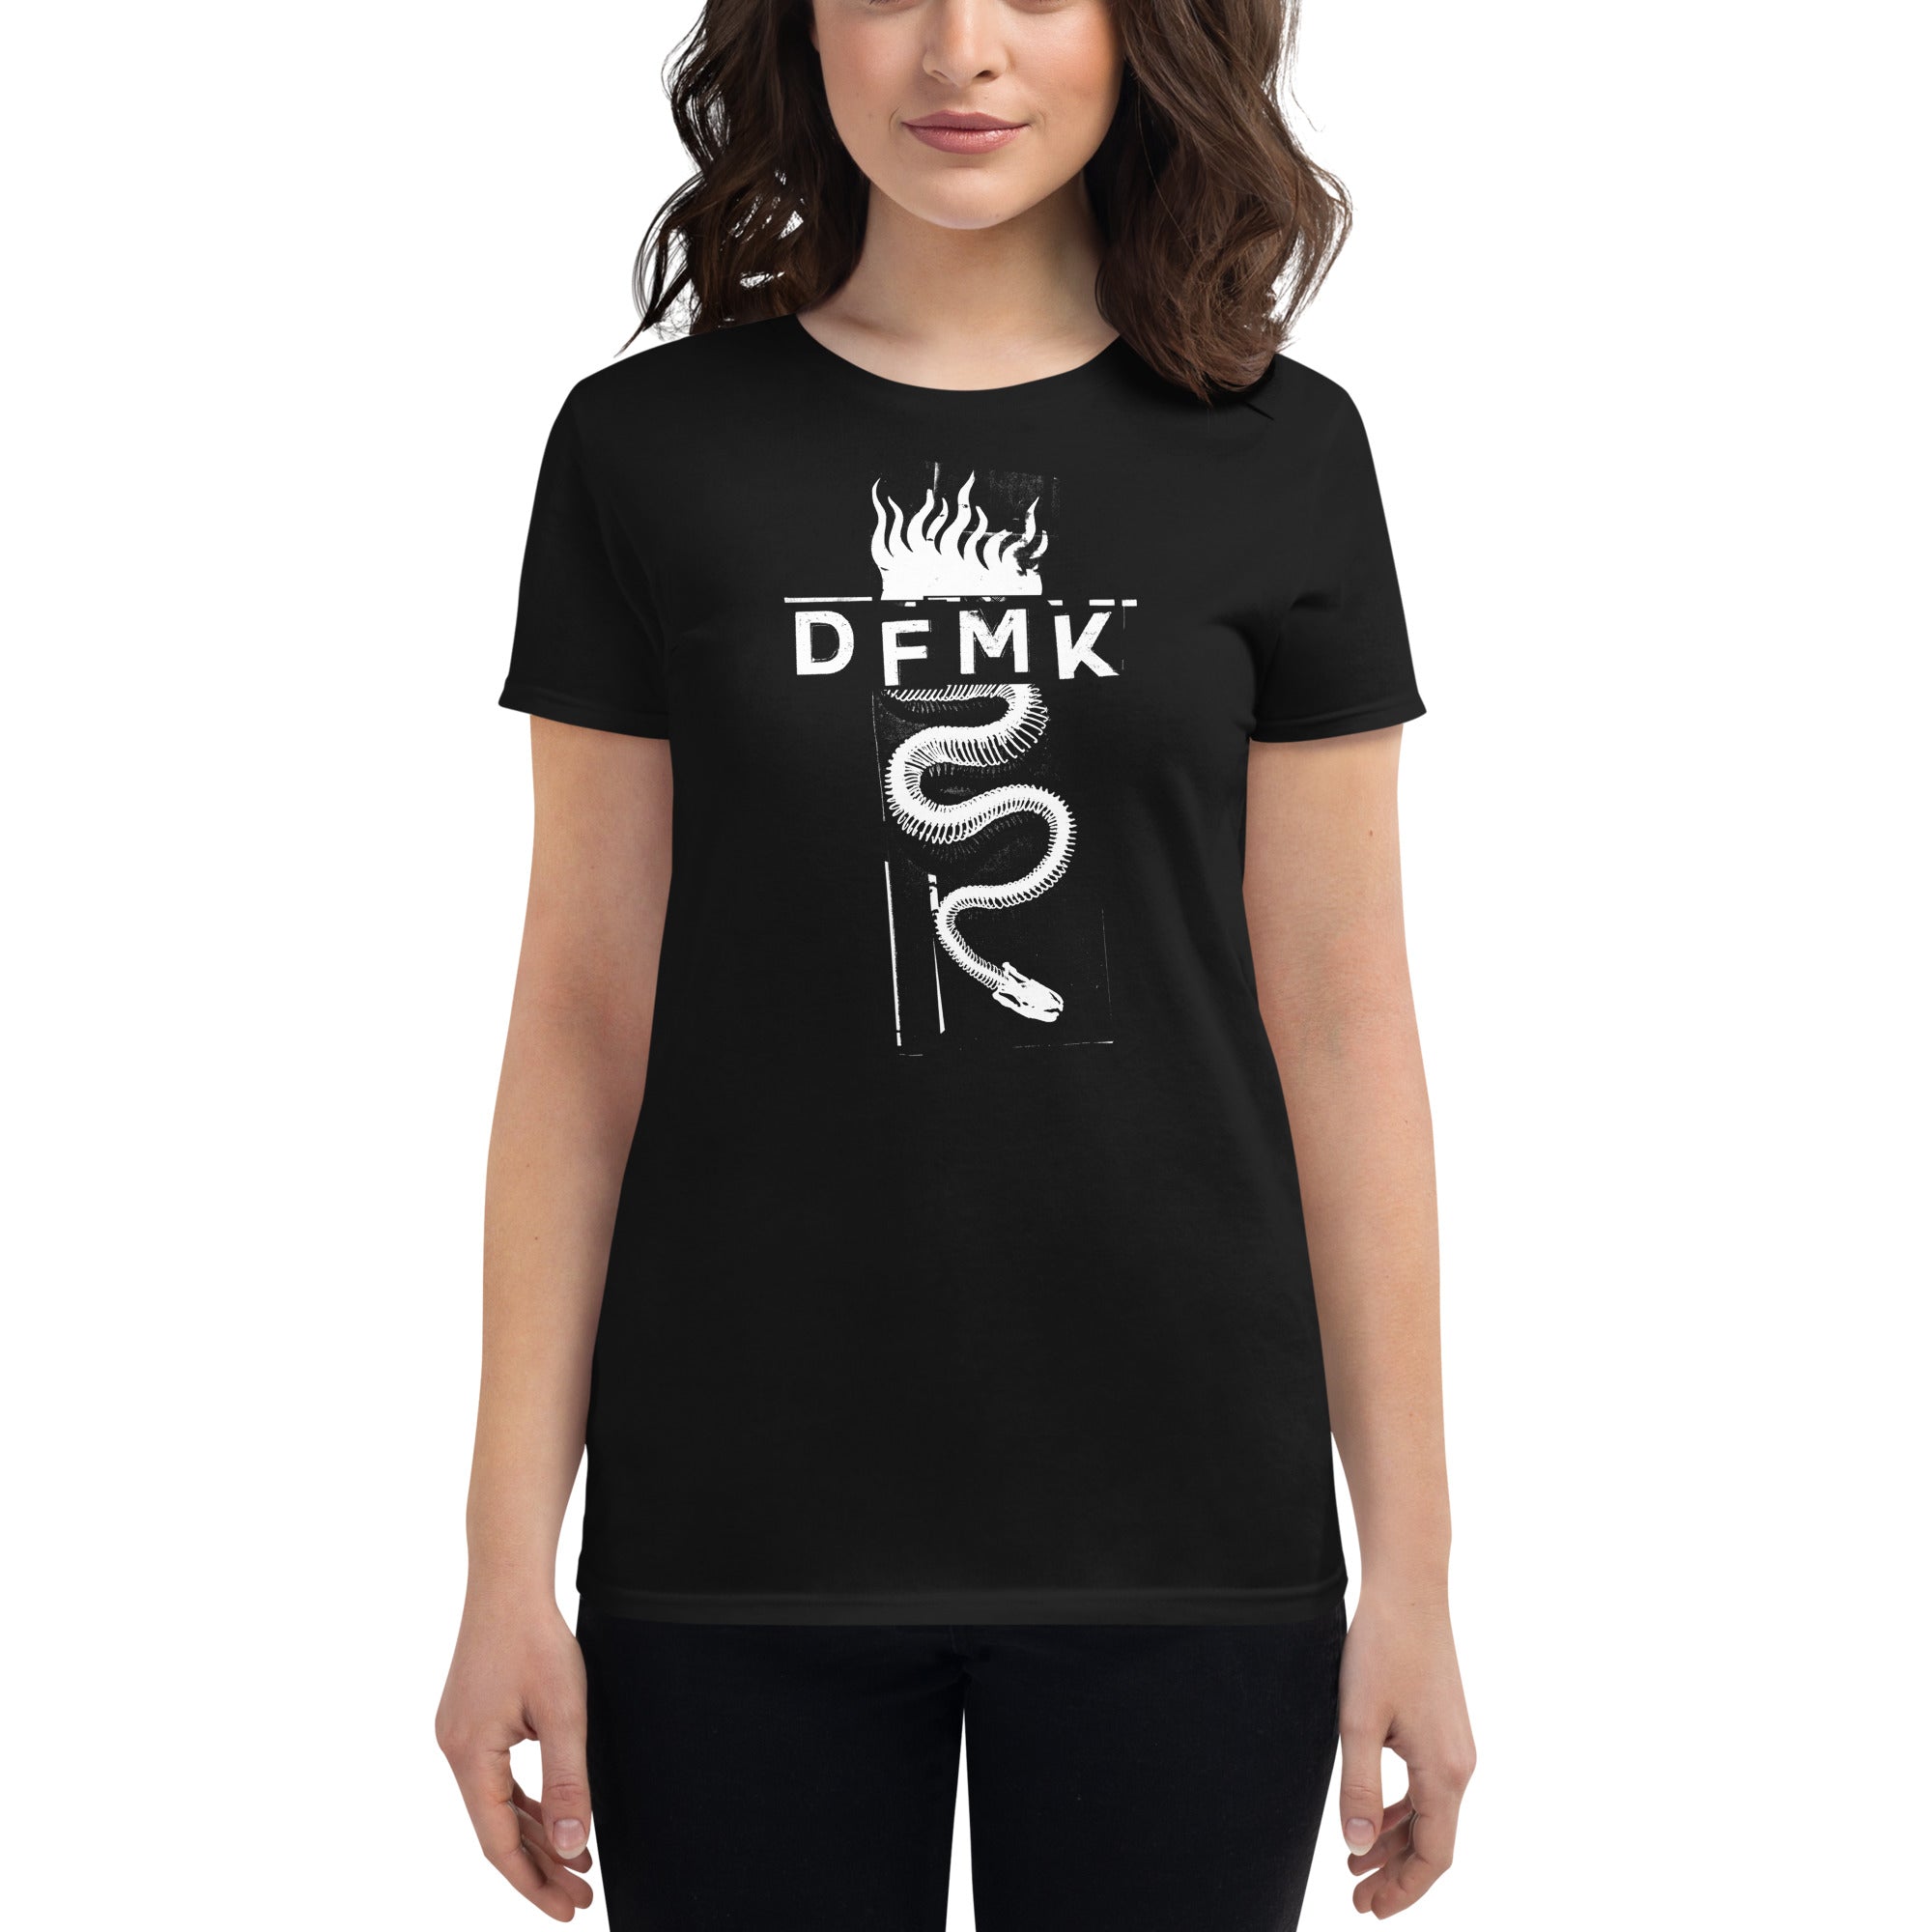 DFMK "Dame Peligro" Femme Black T-shirt